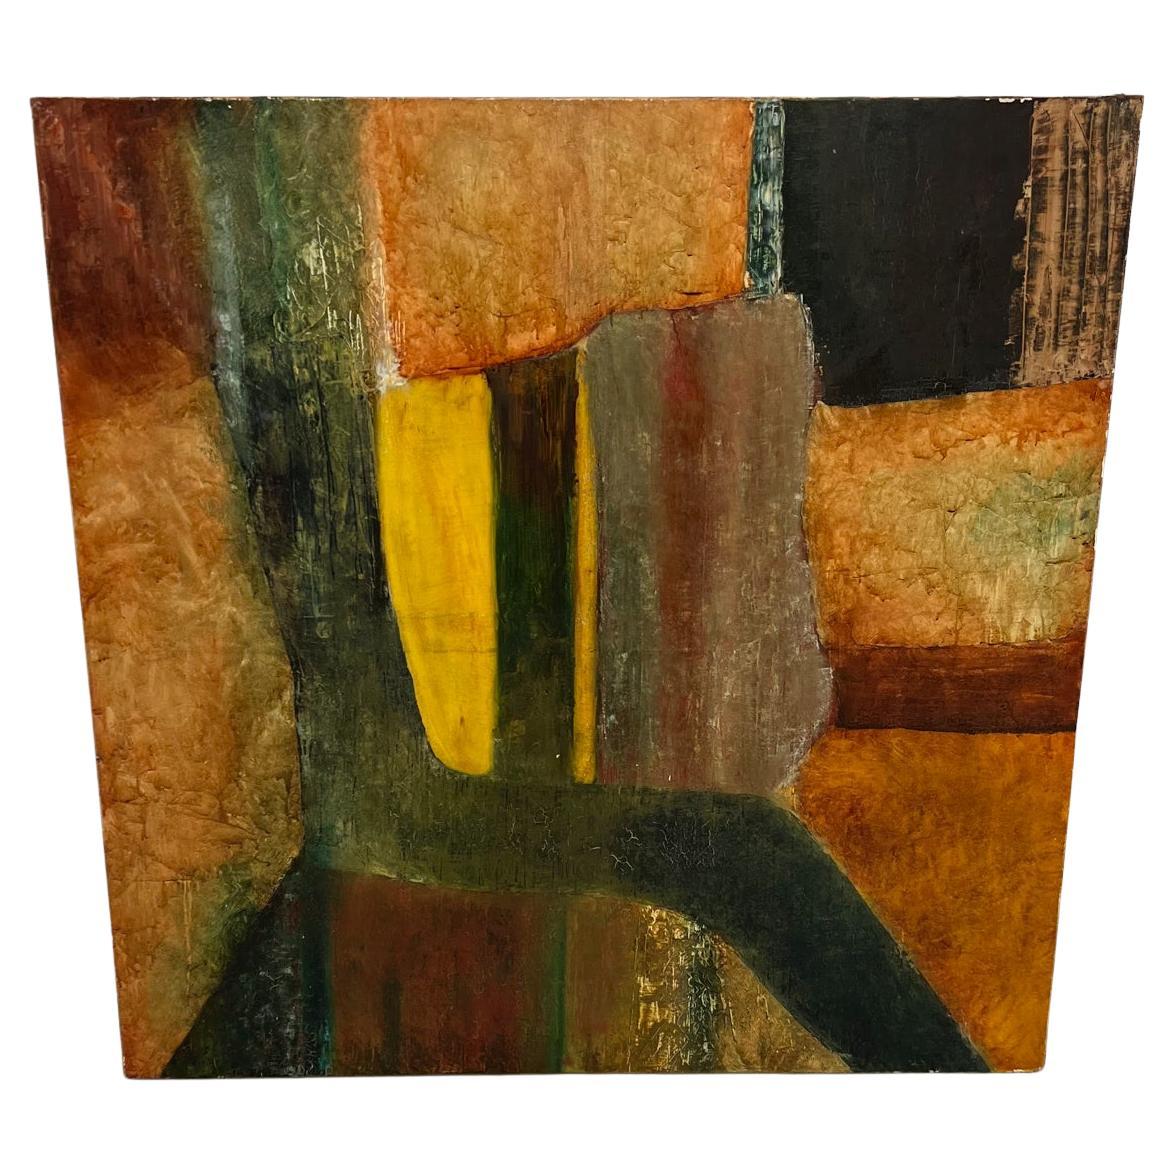 1988 Abstract Art Cubist Original Painting Oil on Canvas C. Martin Tschaen